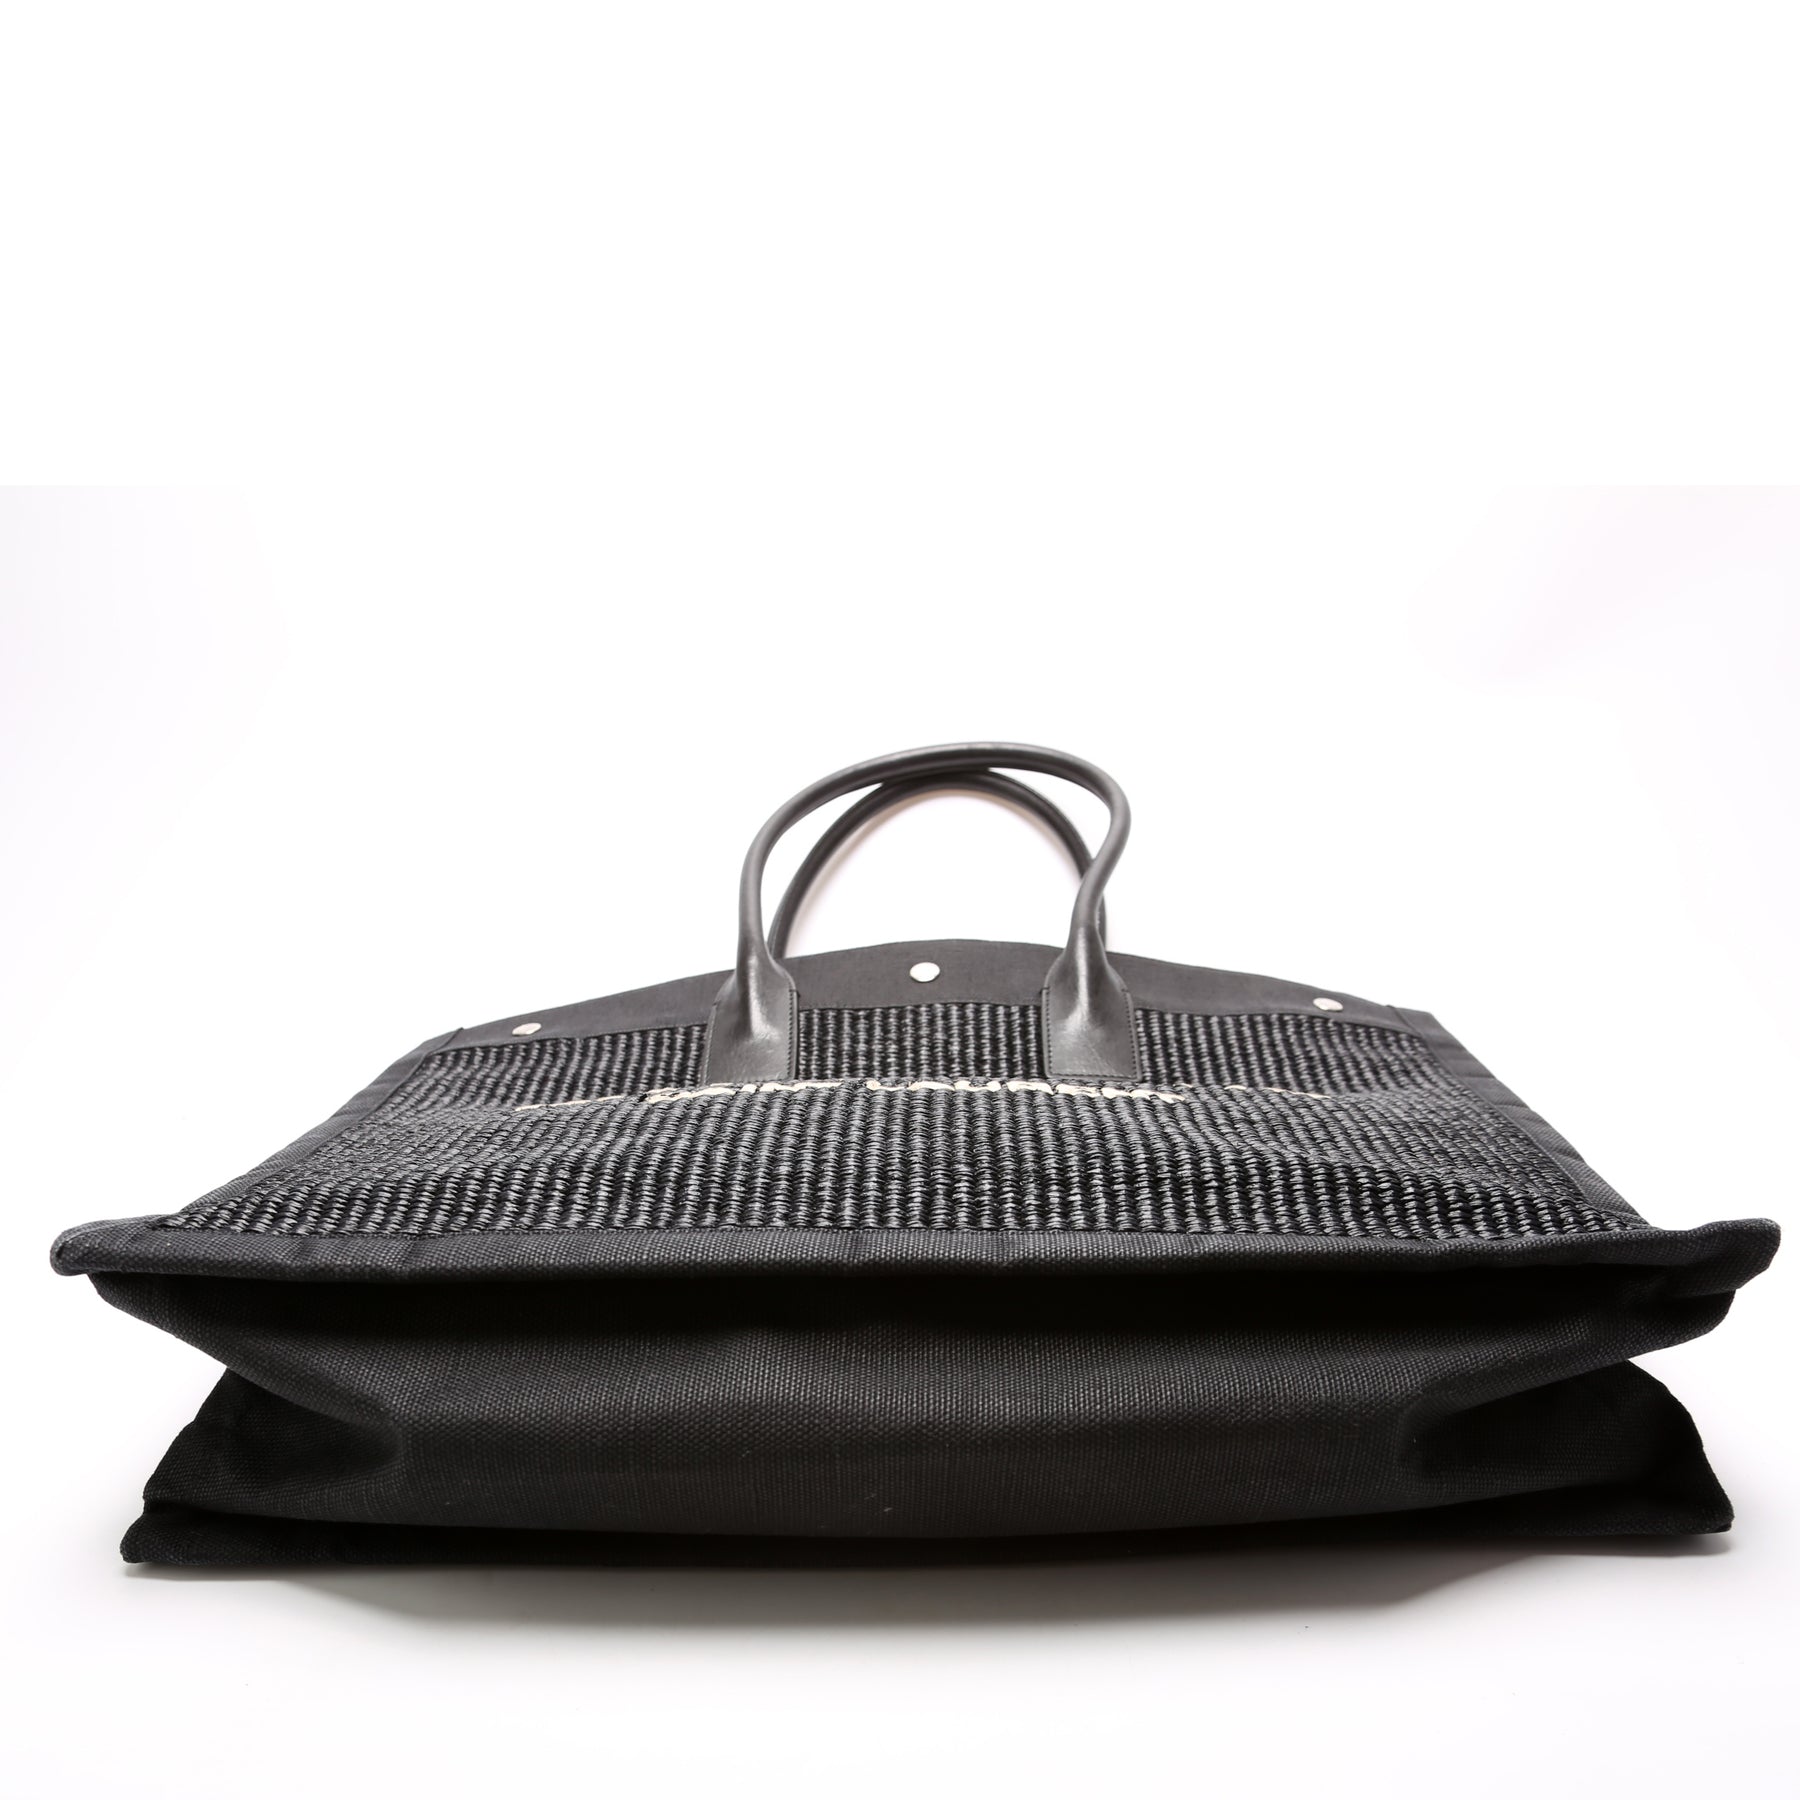 Rive Gauche Tote Bag – Keeks Designer Handbags